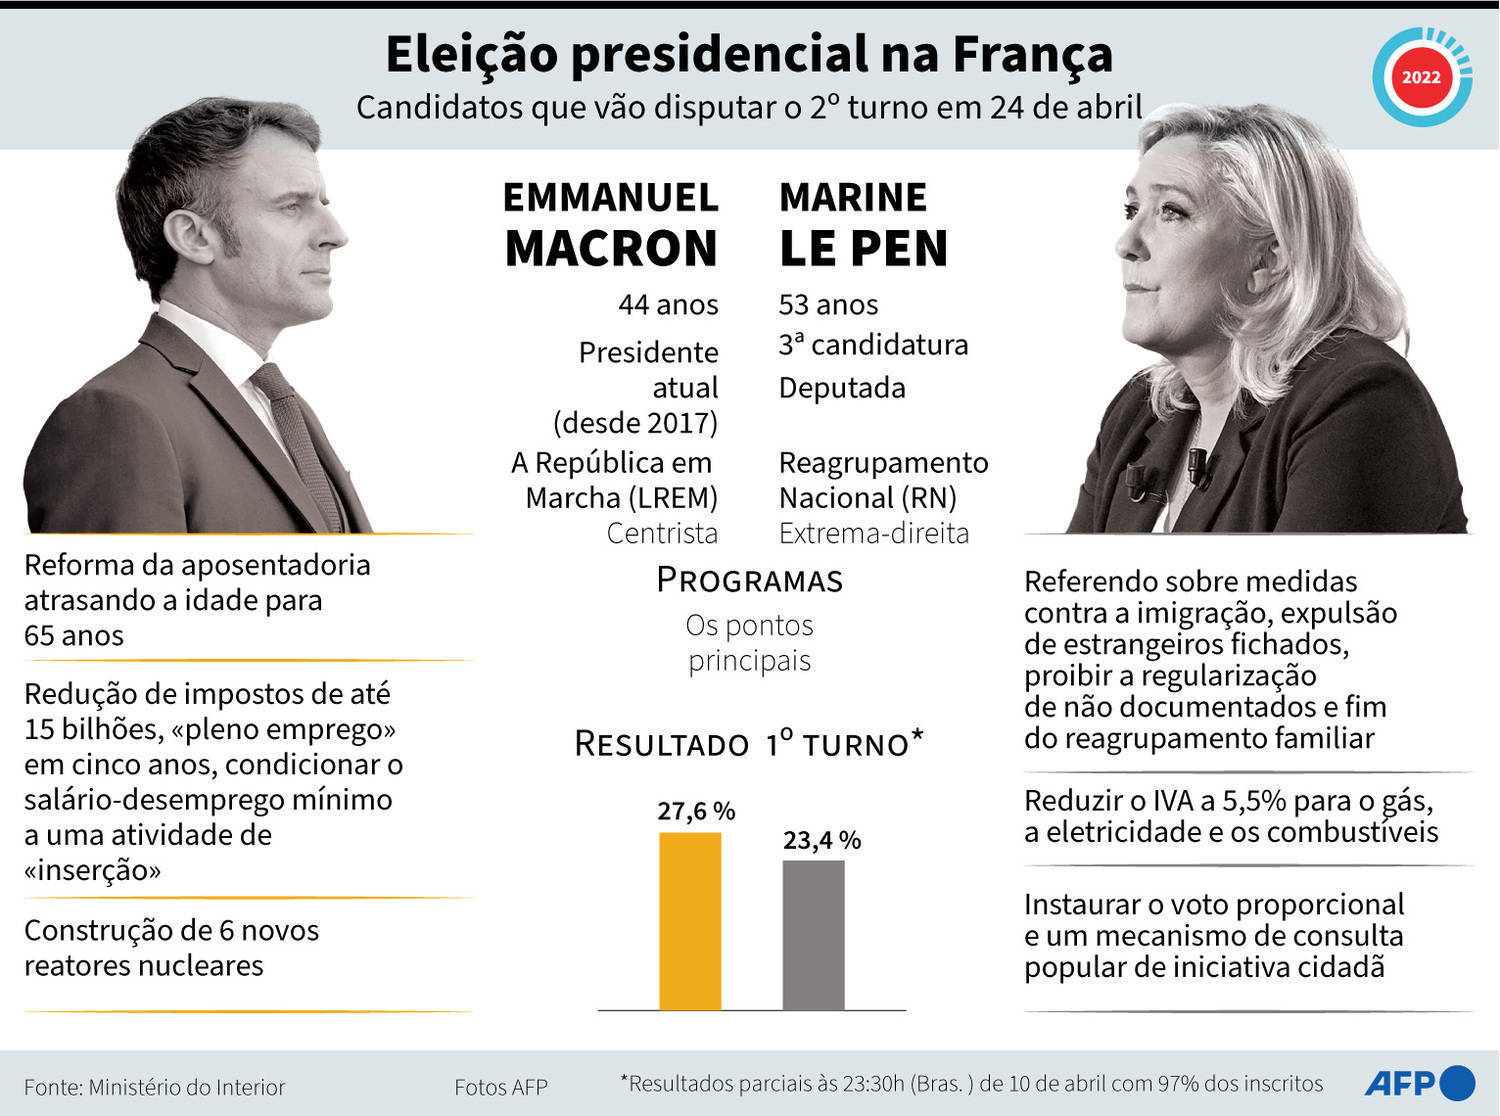 Dados de Emmanuel Macron e Marine Le Pen